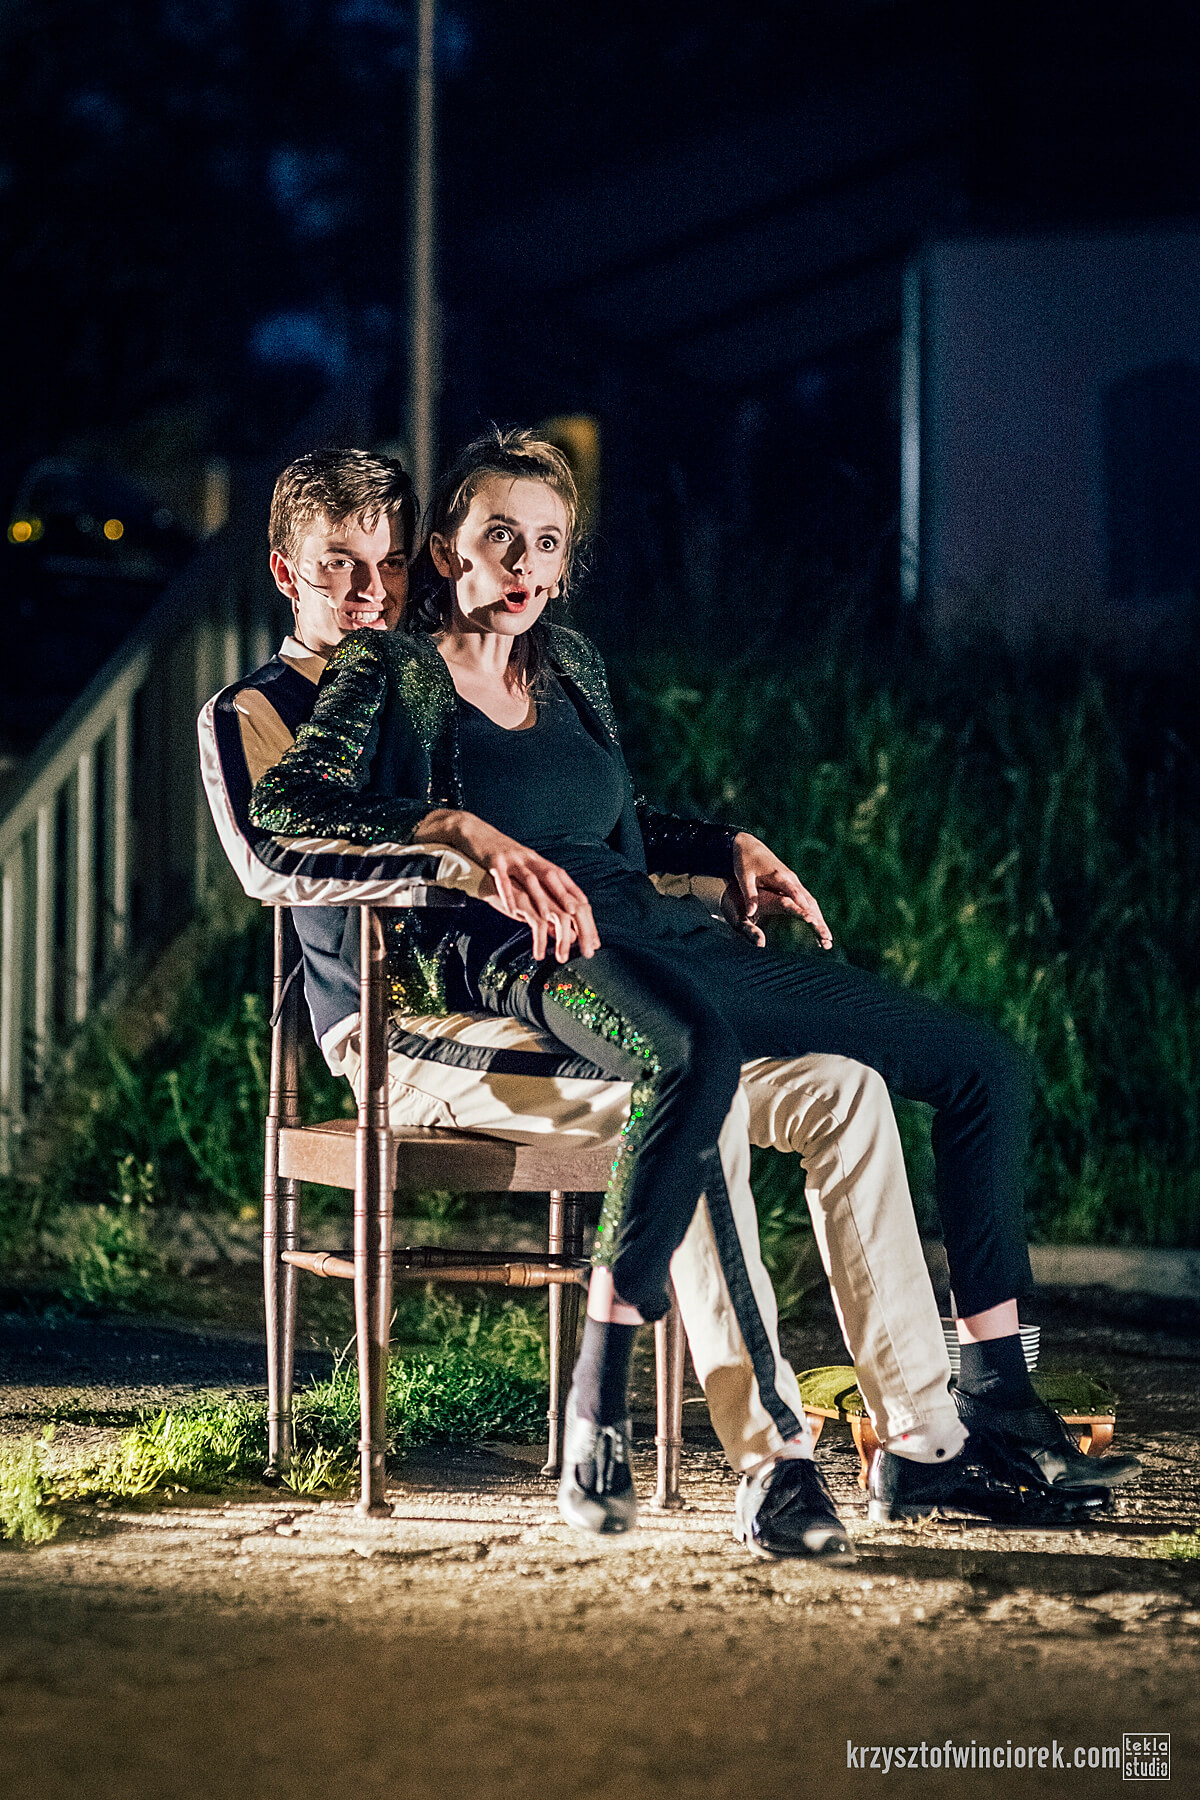 scena nocna, na zdjęciu dwójka aktorów, mężczyzna szczerząc się siedzi na drewnianym krześle, na jego kolanach siedzi aktorka w zielonym stroju